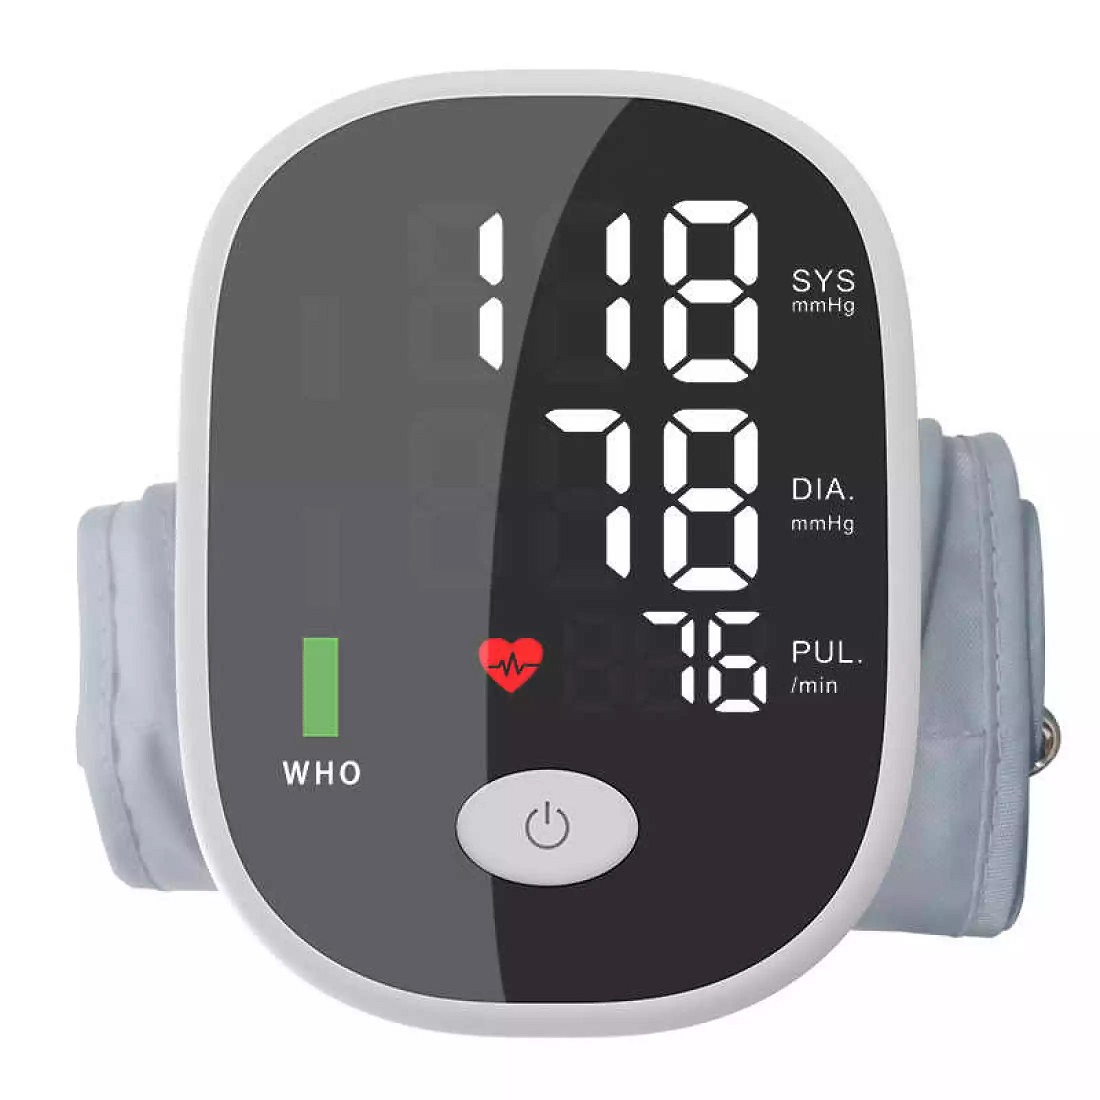 Máy đo huyết áp đo nhịp tim BP-S01, kiểm tra huyết áp hàng ngày, bác sĩ gia đình, bảo hành 2 năm. Bảo Hành 12 Tháng